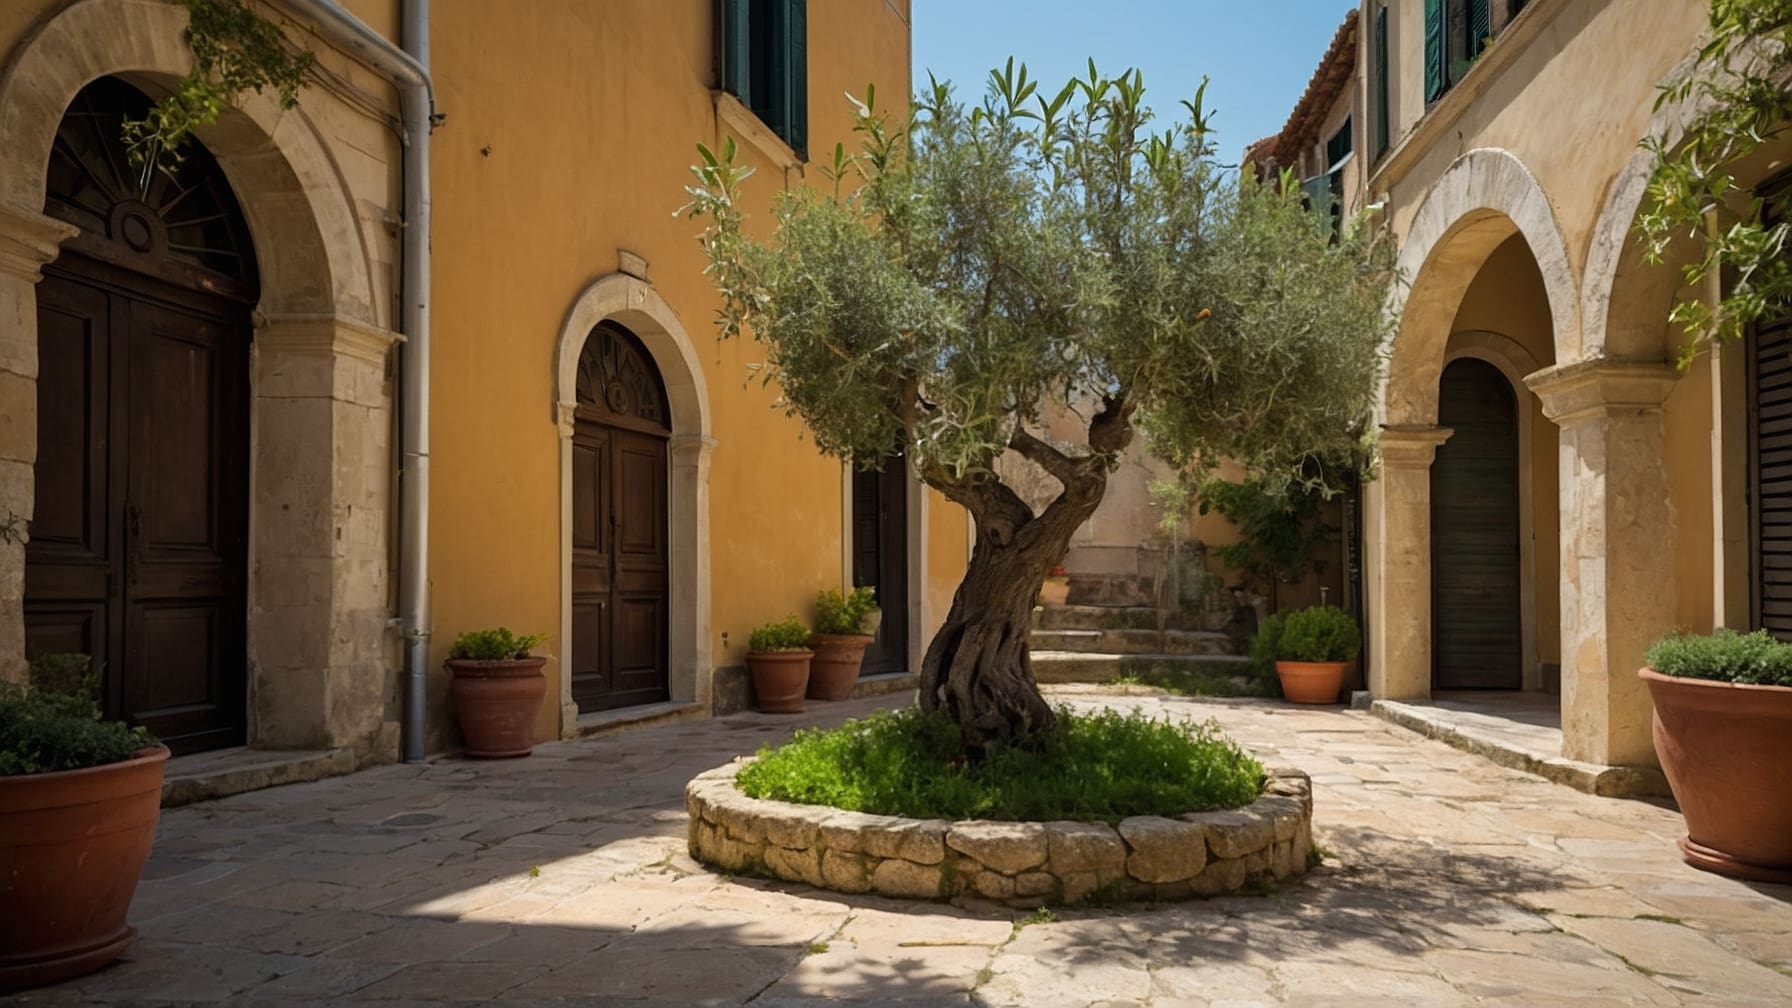 Cura olivo primavera: scopri tecniche di potatura, gestione del terreno, controllo parassiti e irrigazione per olivi sani e produttivi